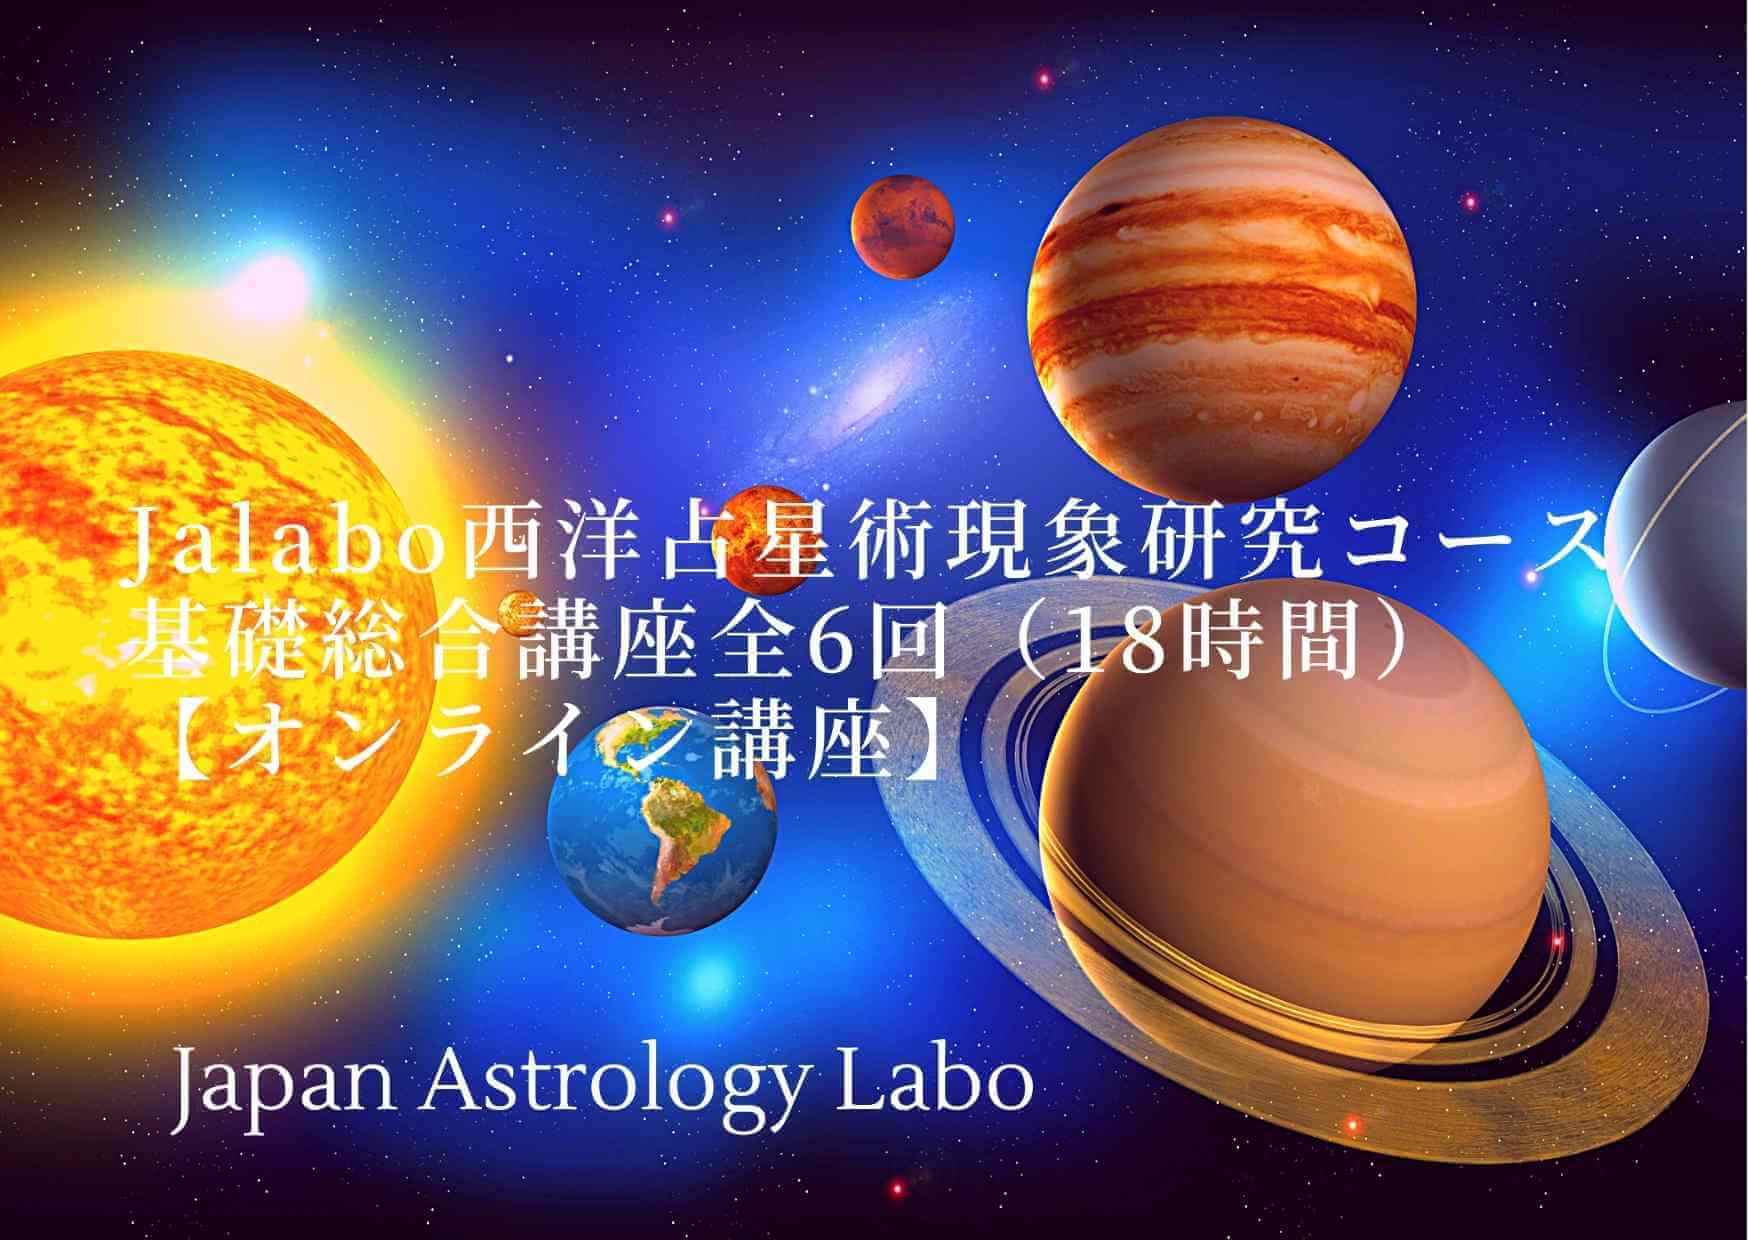 Jalabo西洋占星術現象研究コース基礎総合講座全6回【オンライン講座】